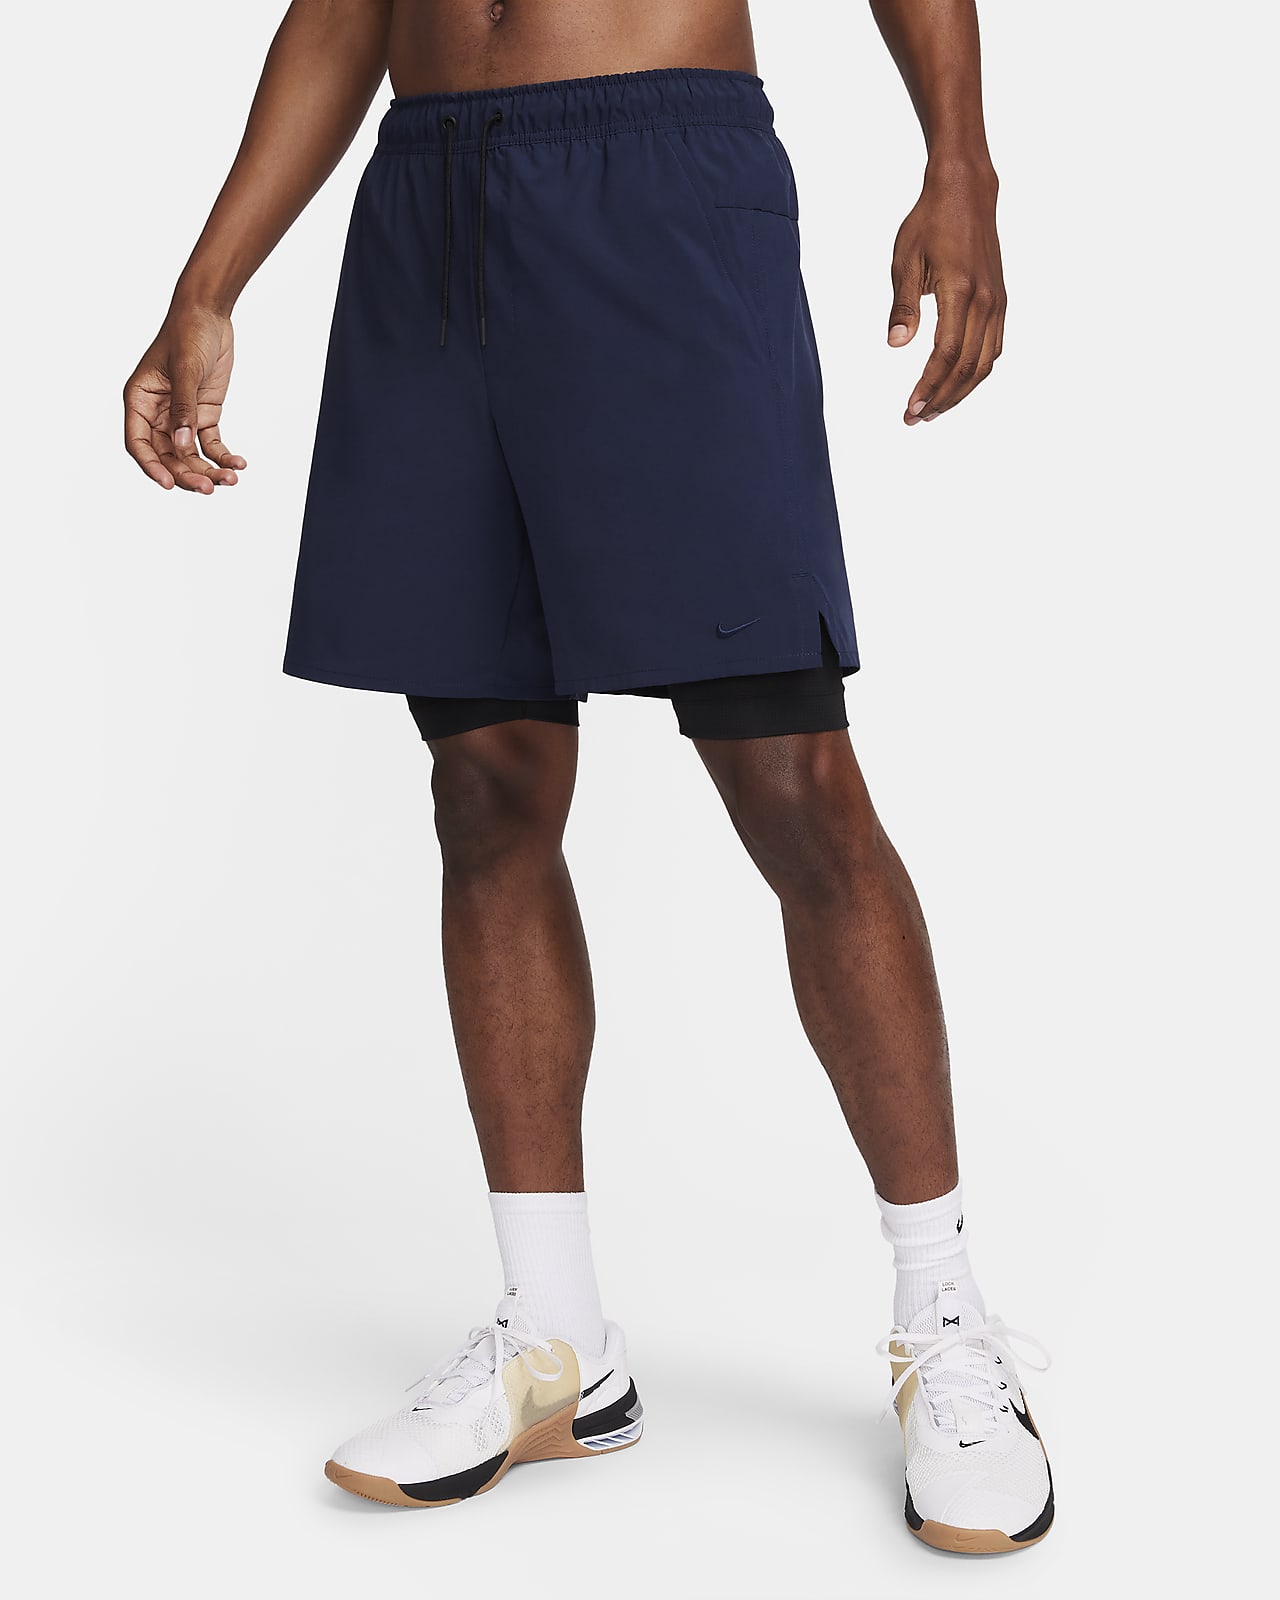 Shorts versátiles Dri-FIT de 18 cm 2 en 1 para hombre Nike Unlimited